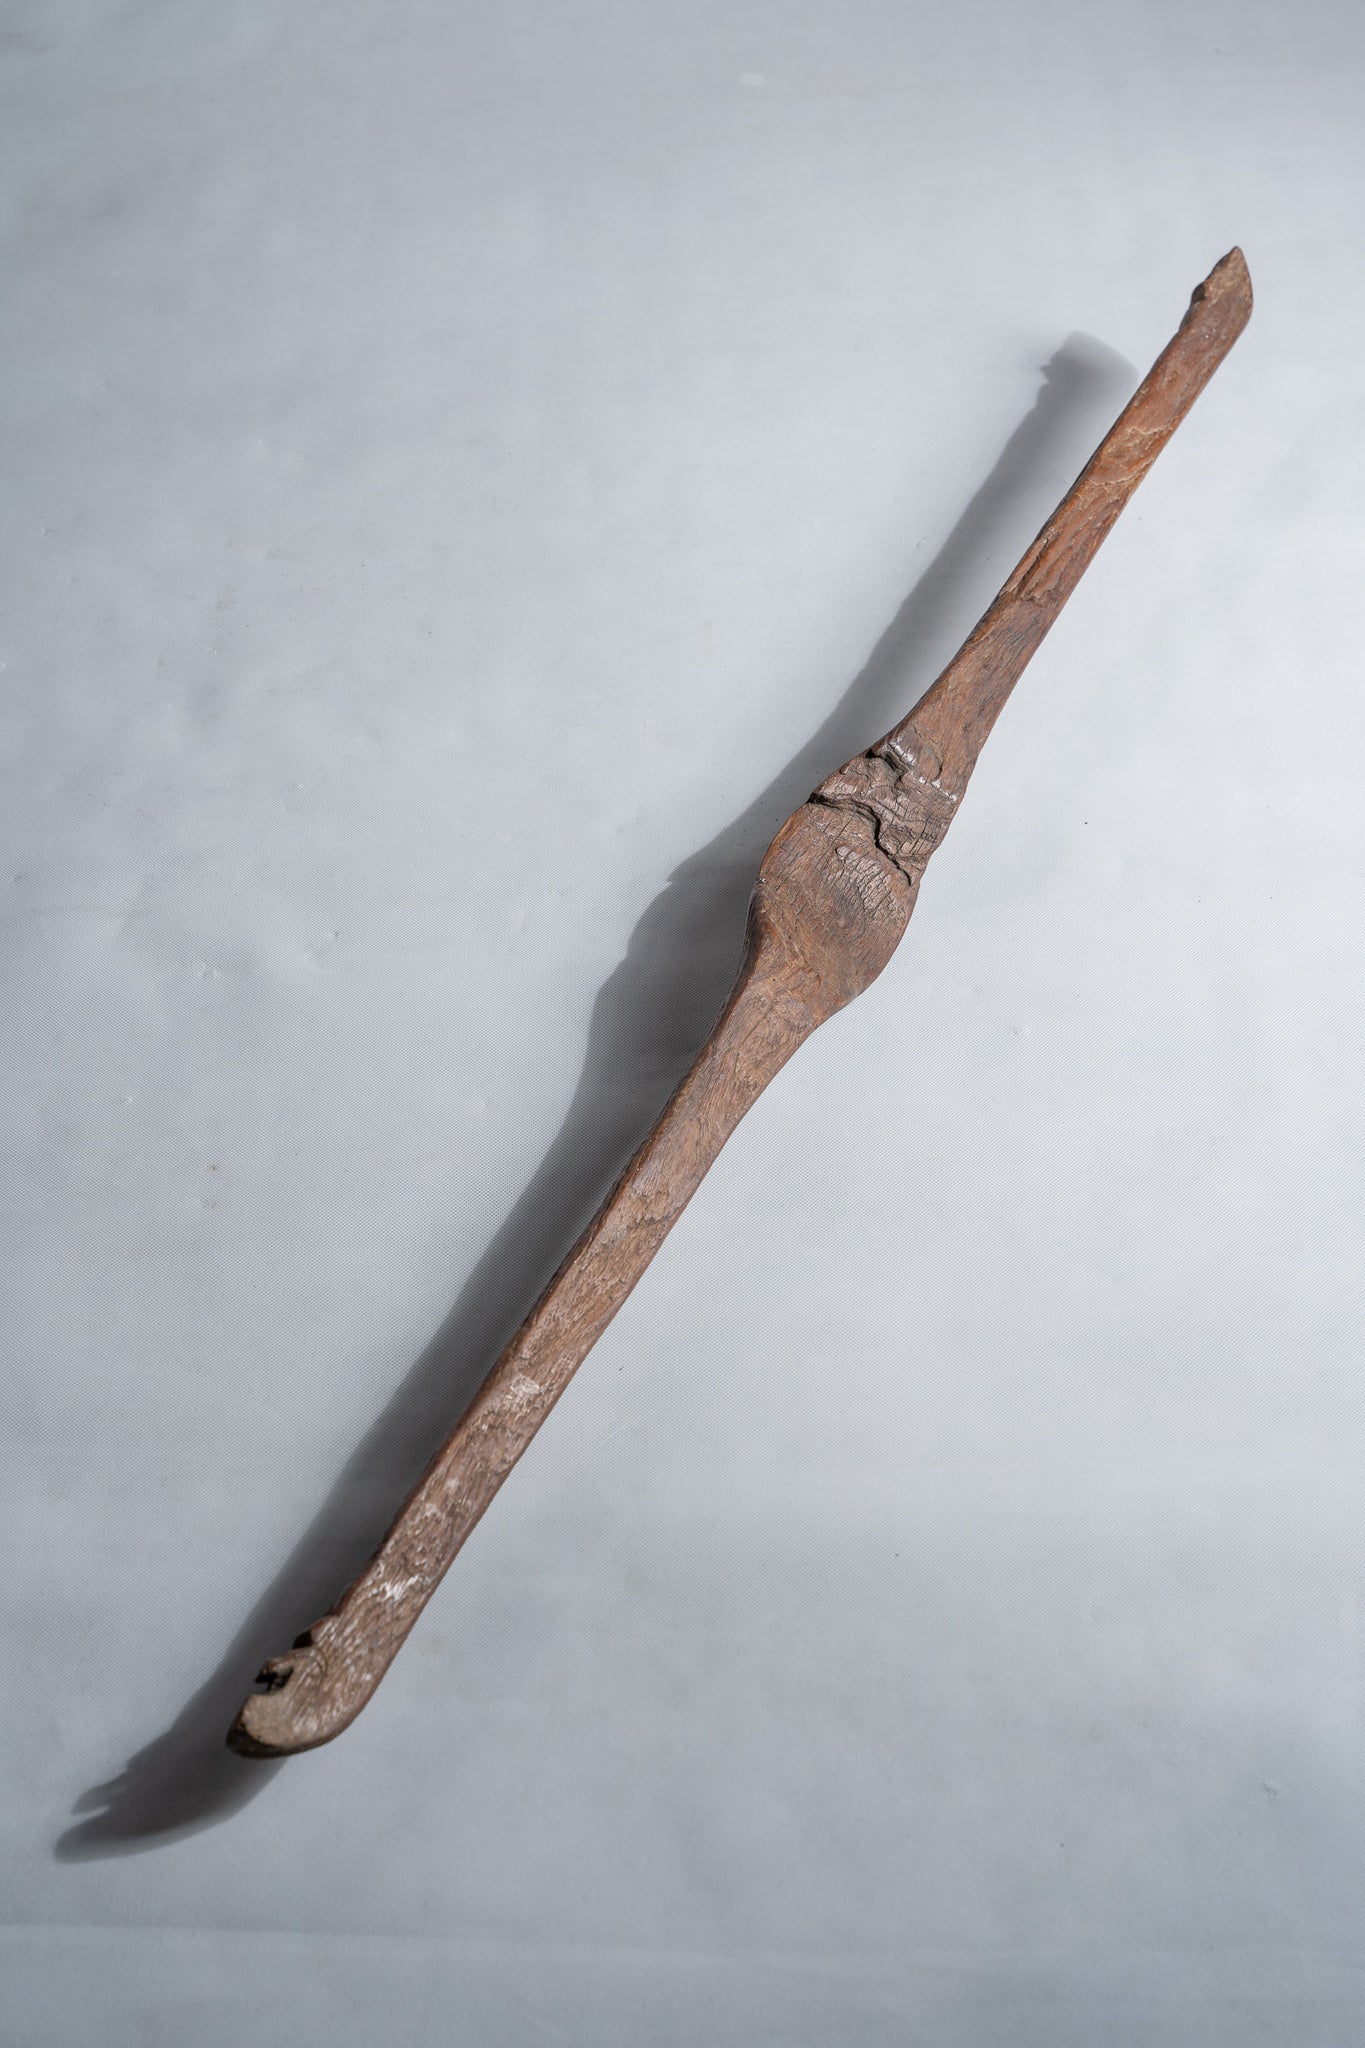 Duo de bâtons en bois sculpté, anciens outils traditionnels de tissage indonésiens